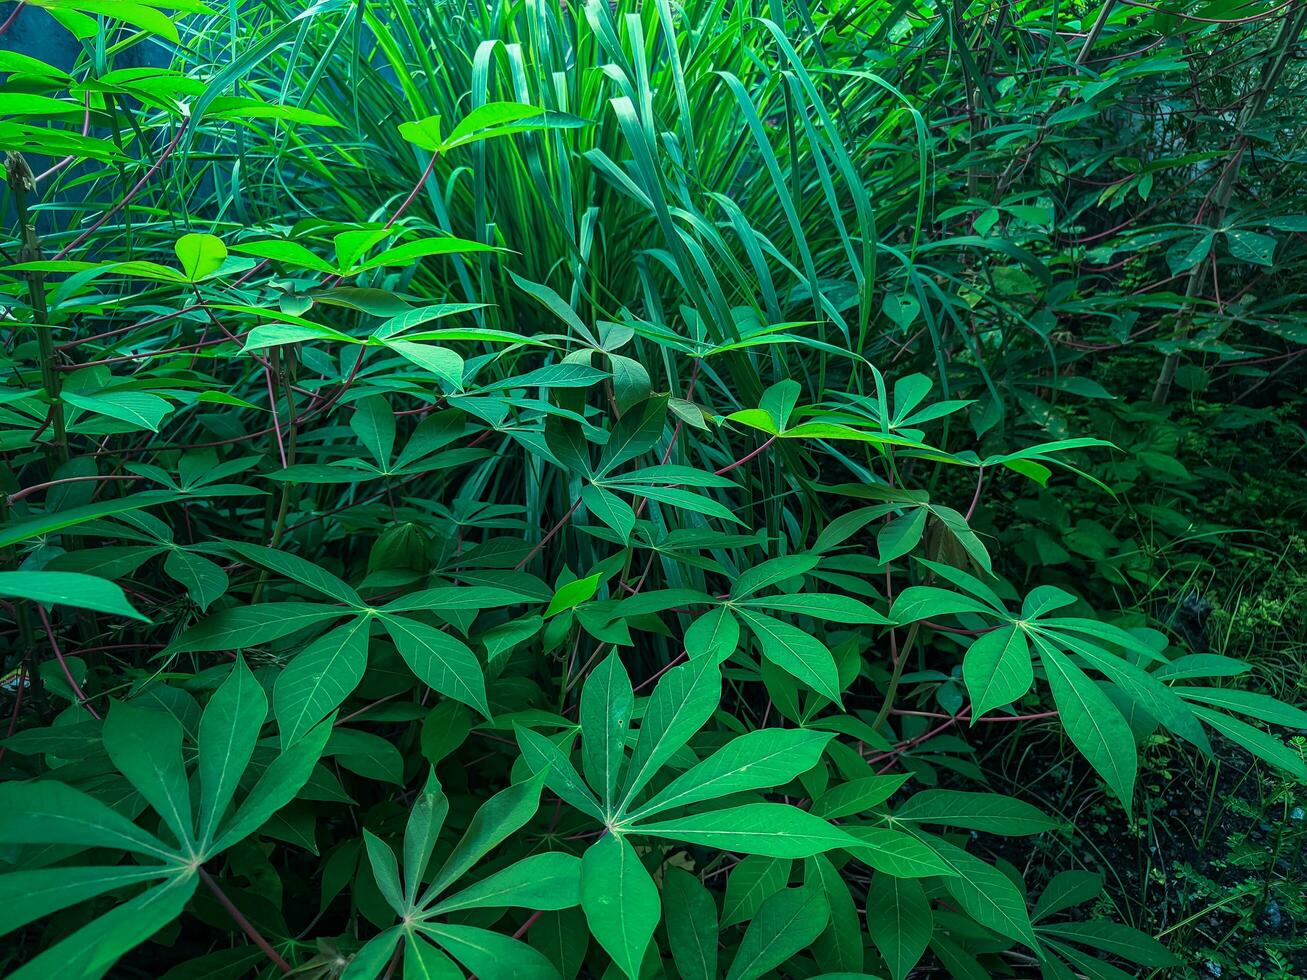 cassave blad planten met een groen uiterlijk zijn geschikt voor de achtergrond foto